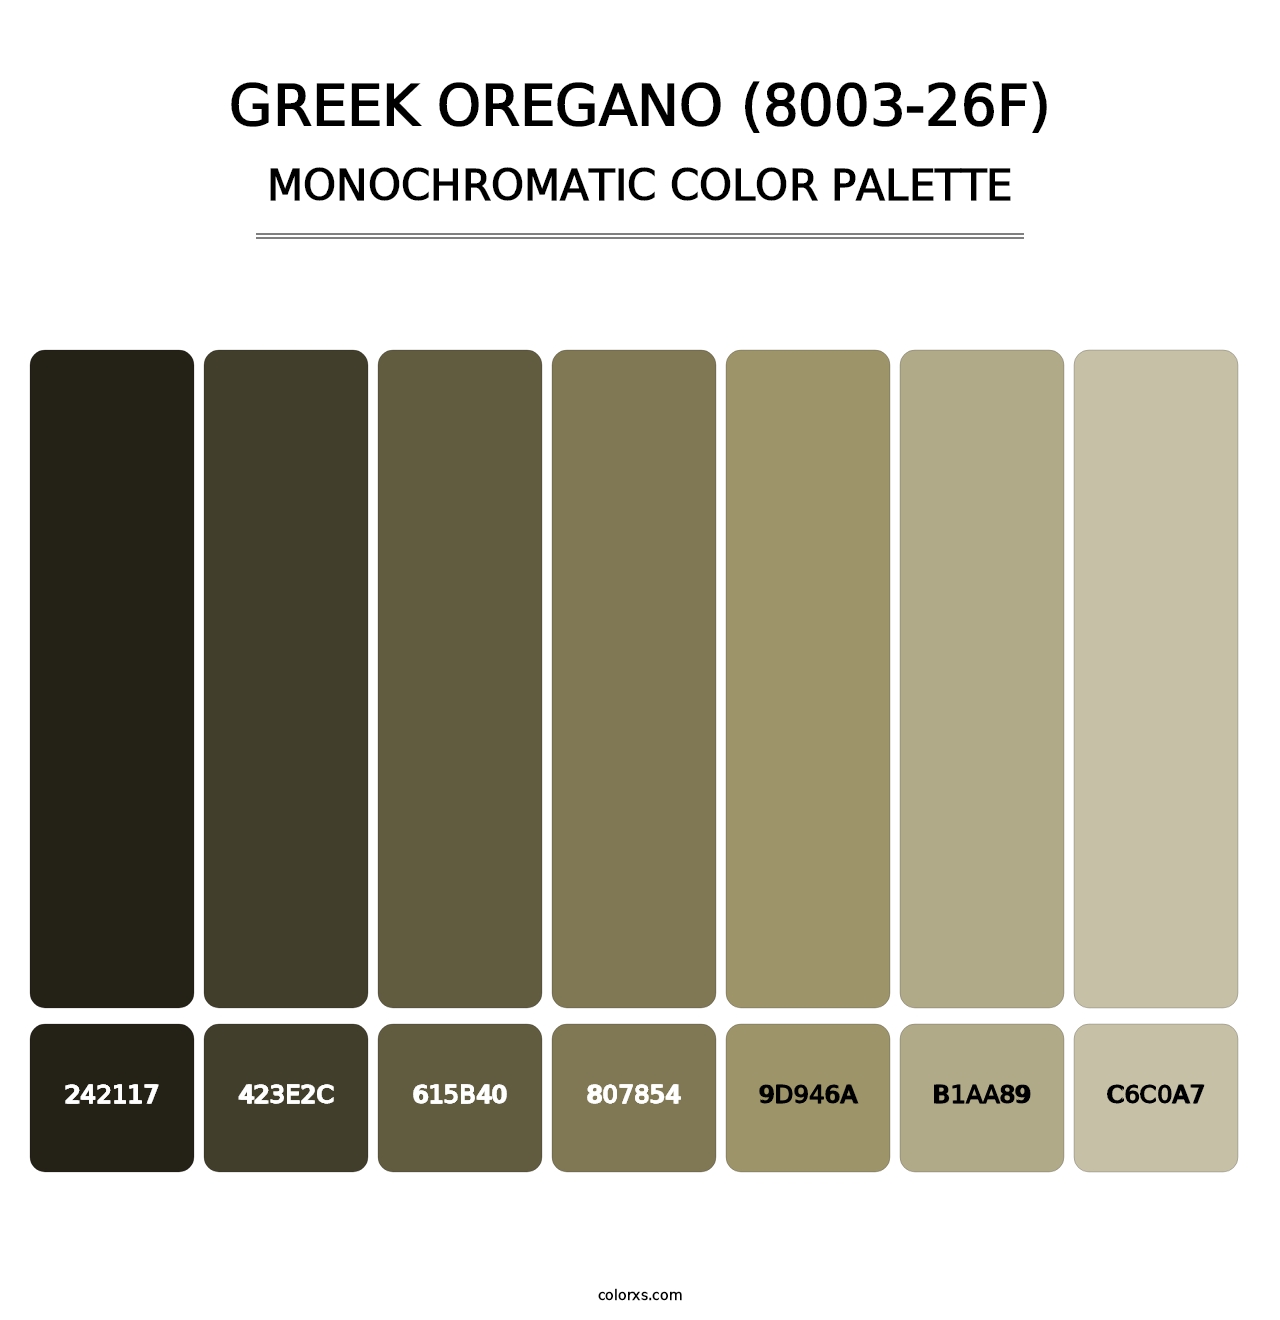 Greek Oregano (8003-26F) - Monochromatic Color Palette